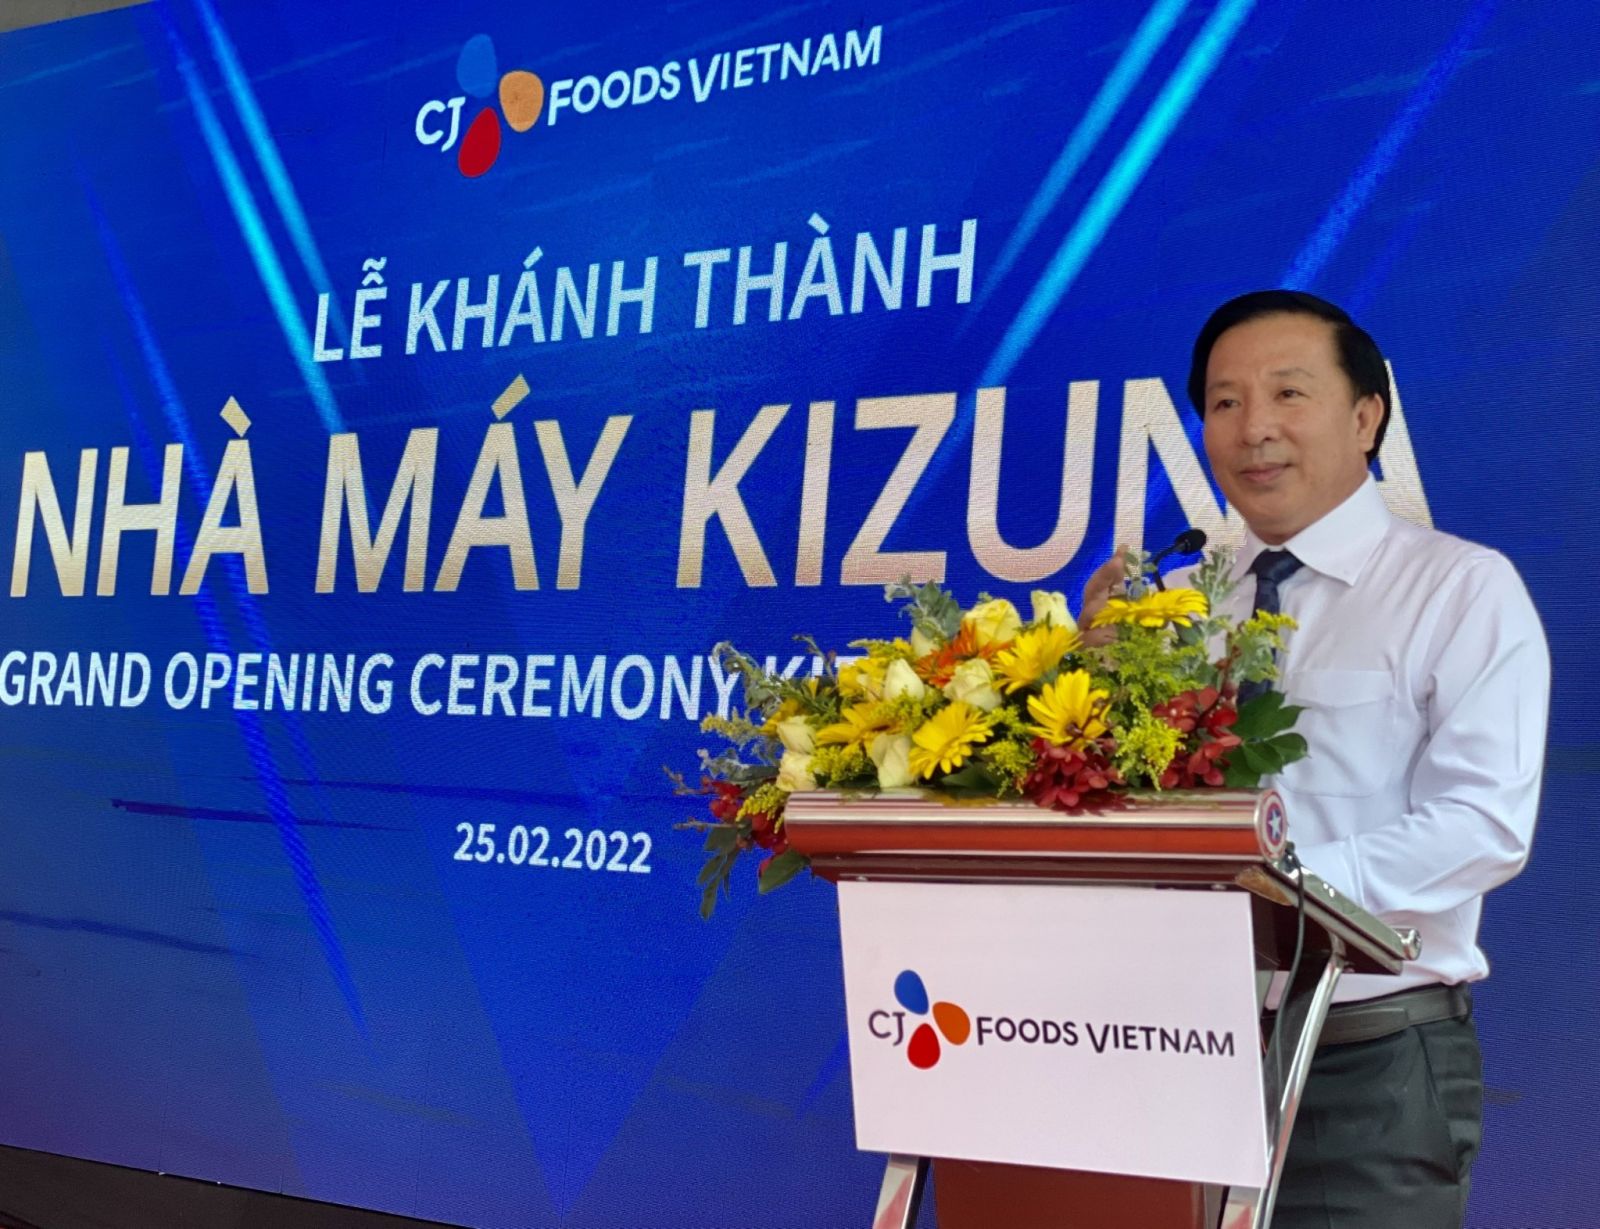 Ông Nguyễn Văn Út - Phó Bí thư Tỉnh ủy, Chủ tịch UBND tỉnh Long An phát biểu tại lễ khánh thành Nhà máy CJ Foods Việt Nam - Kizuna 3